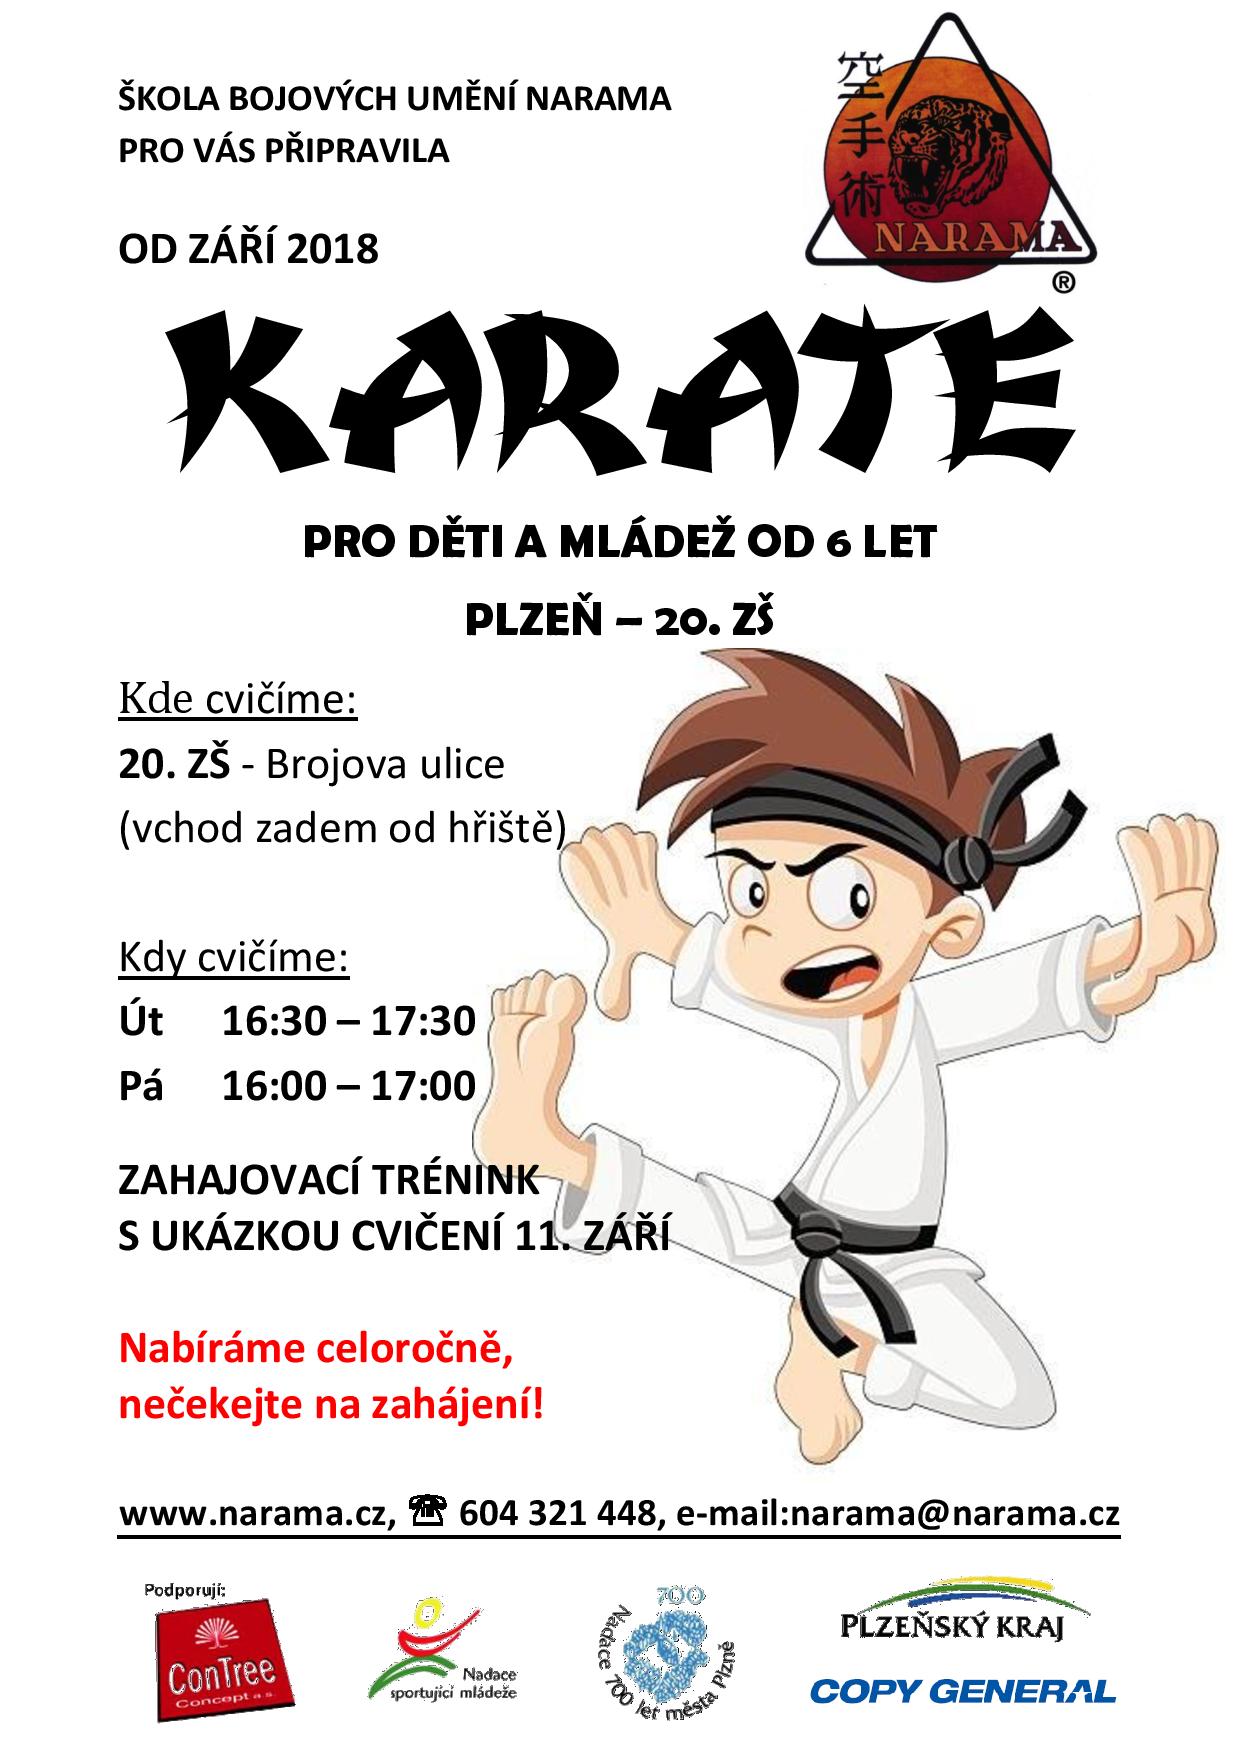 NARAMA - karate pro děti a mládež od 6 let